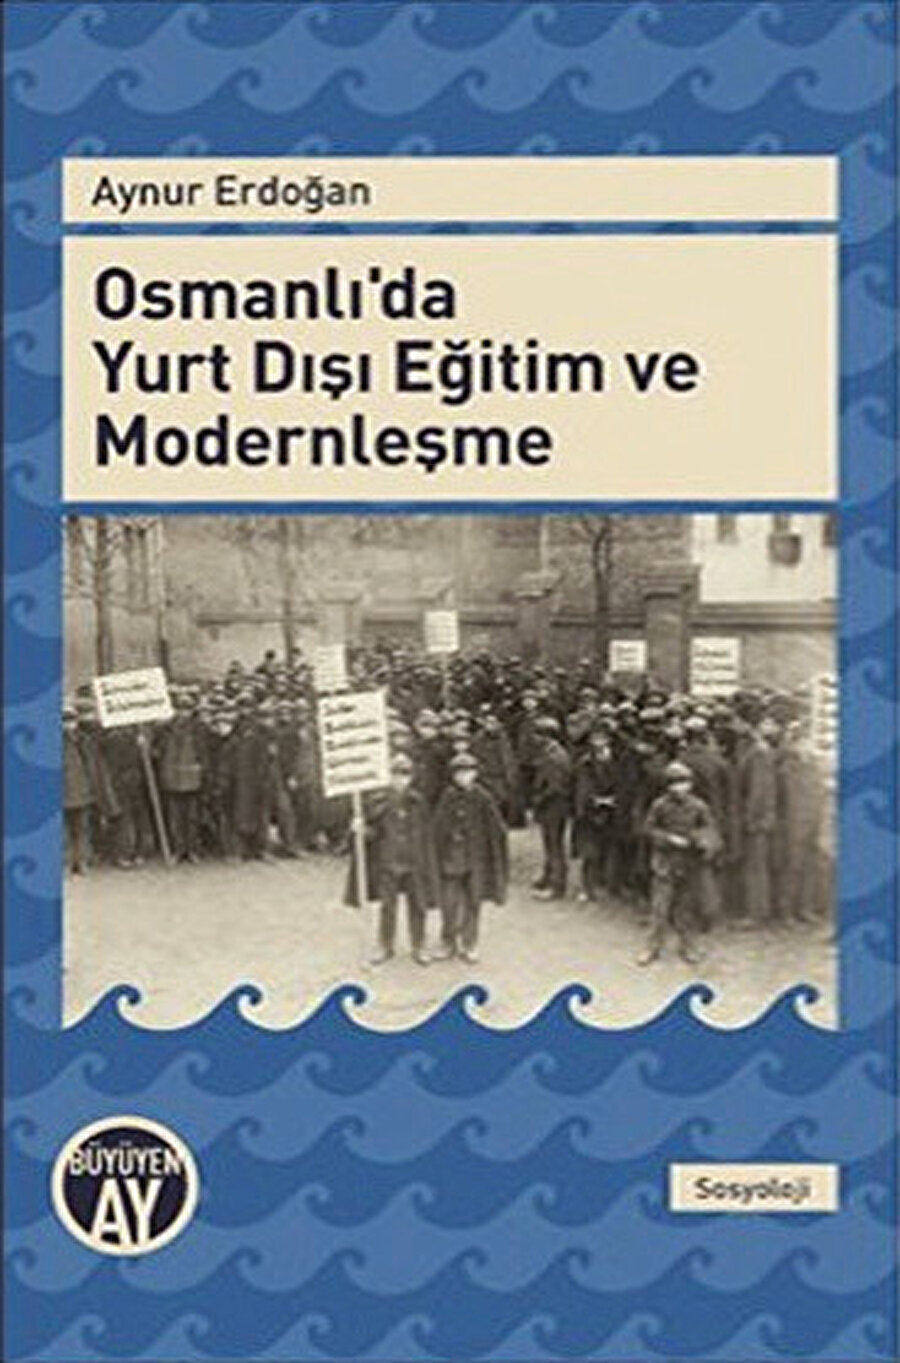 Aynur Erdoğan, Osmanlı’da Yurt Dışı Eğitim ve Modernleşme